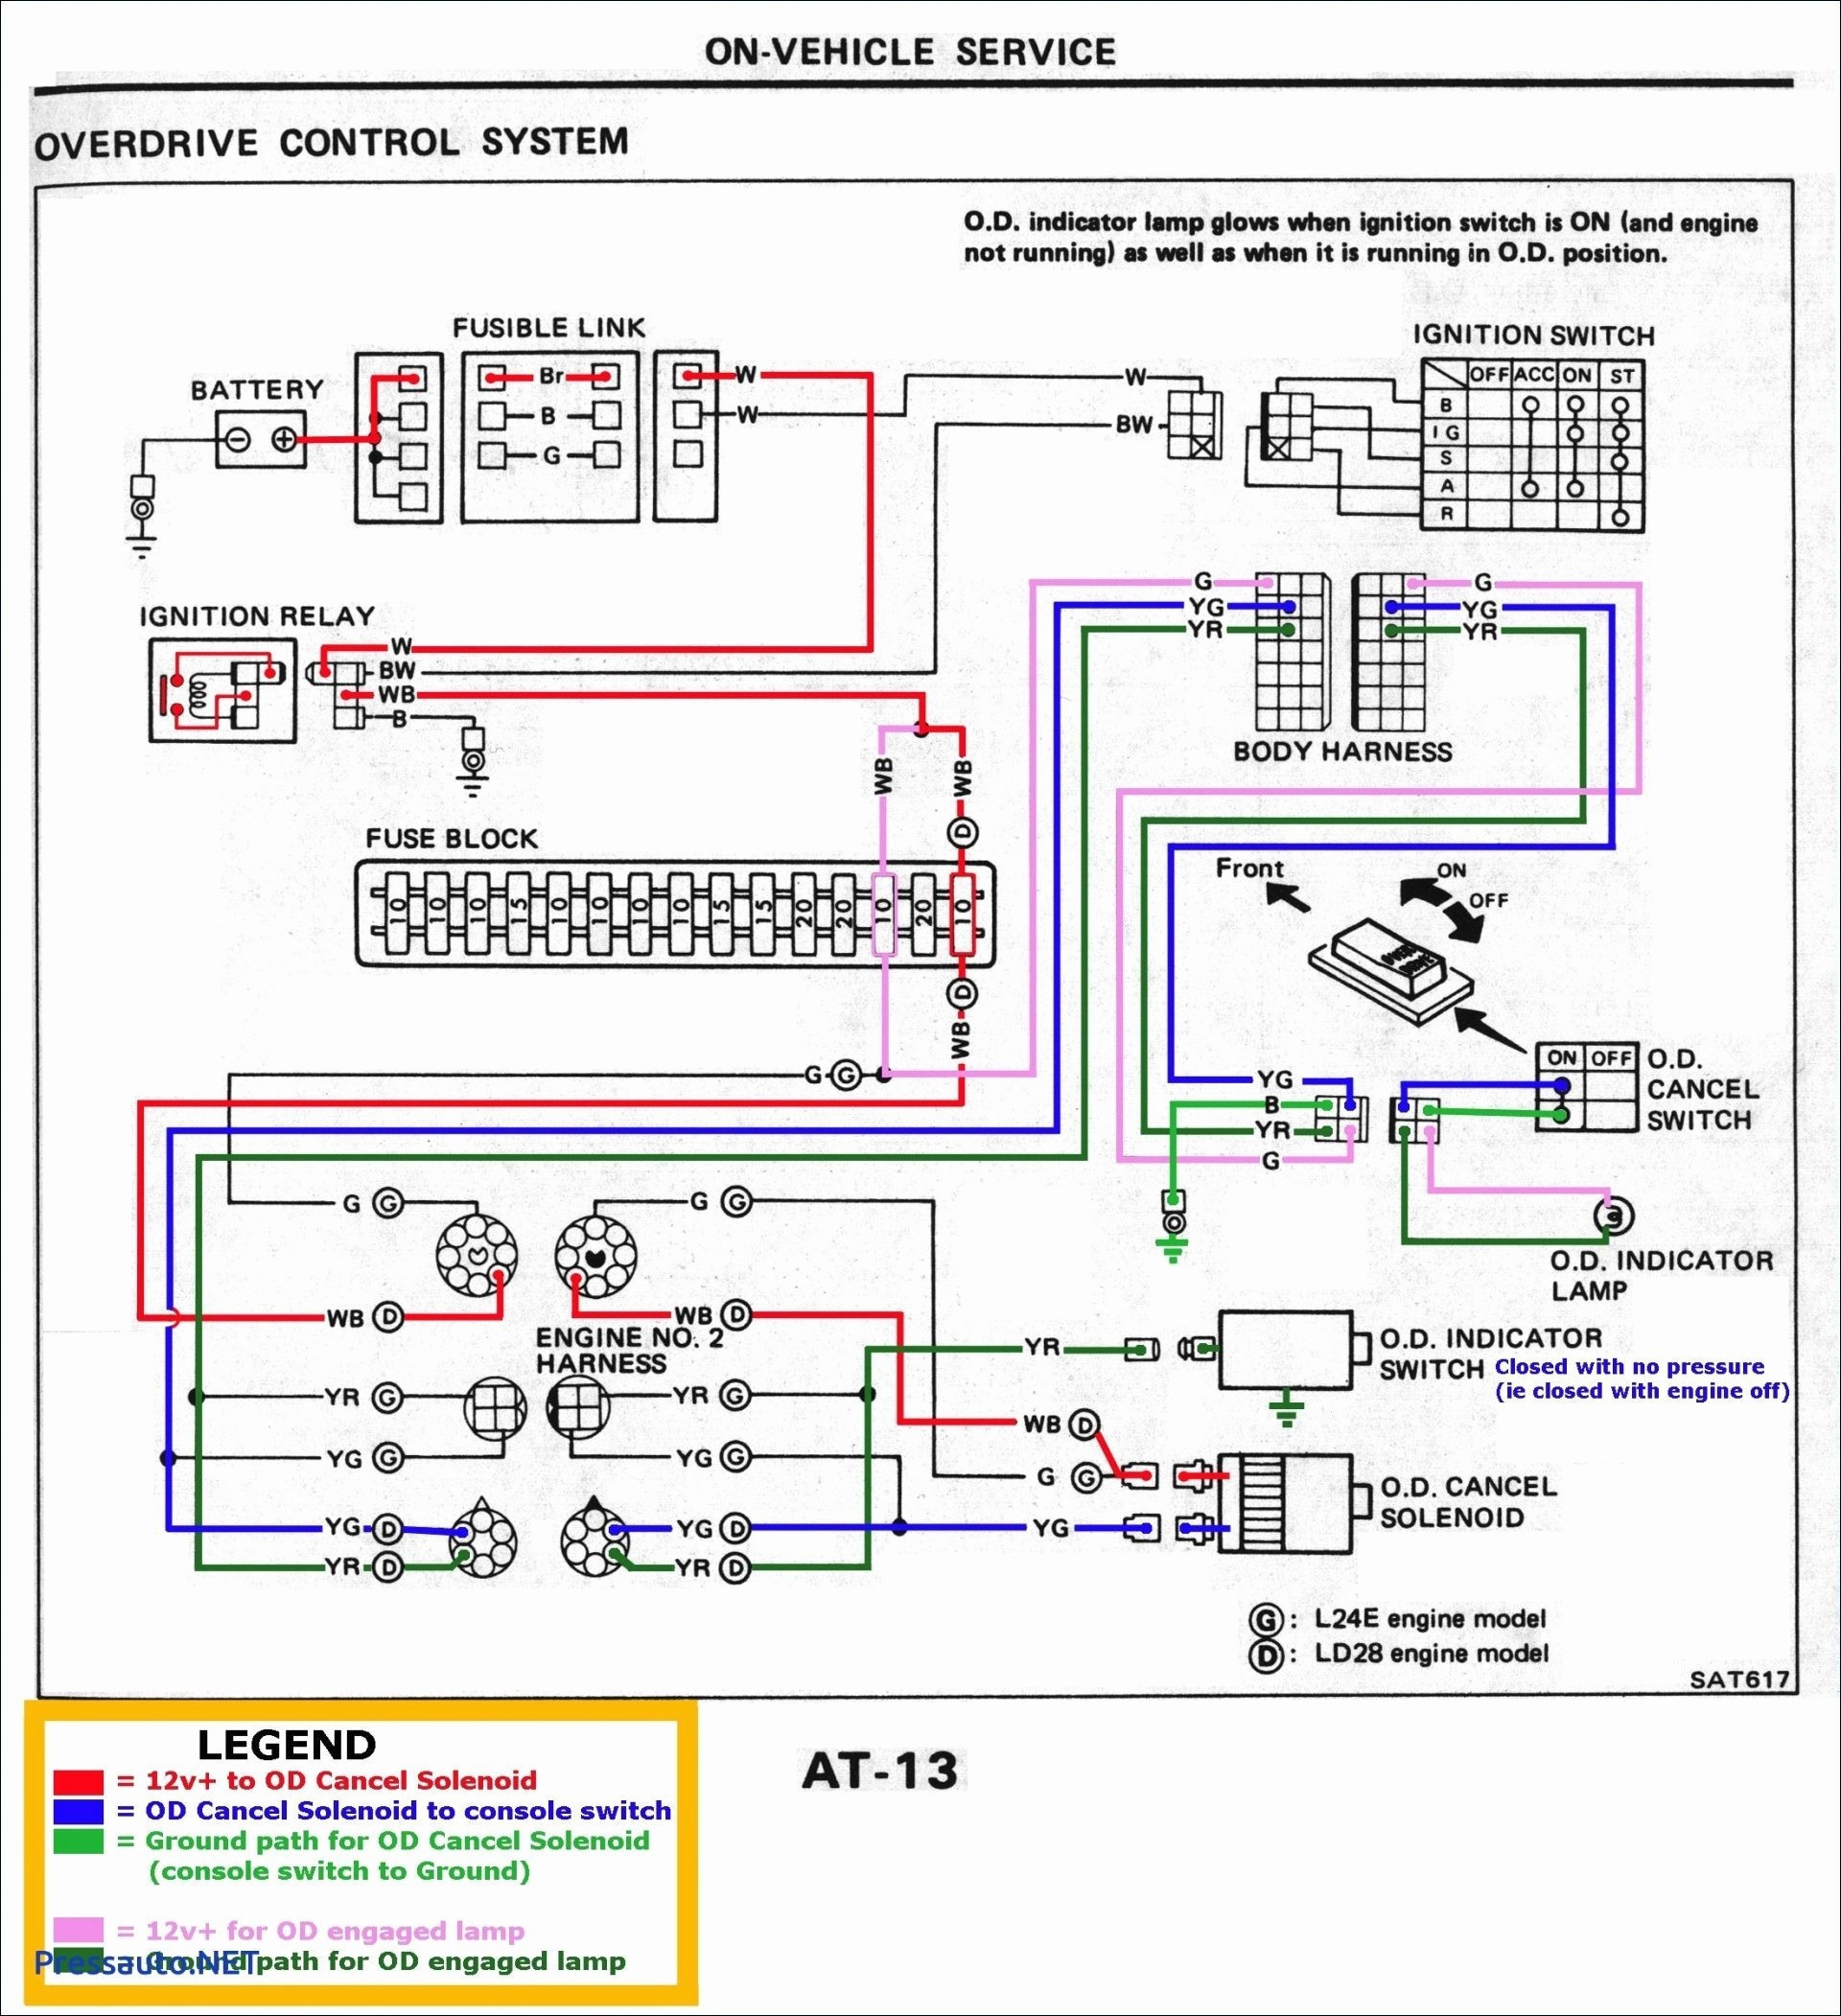 John Deere Wiring Diagrams Valid Motorola Alternator Wiring Diagram John Deere Fresh Volvo 122